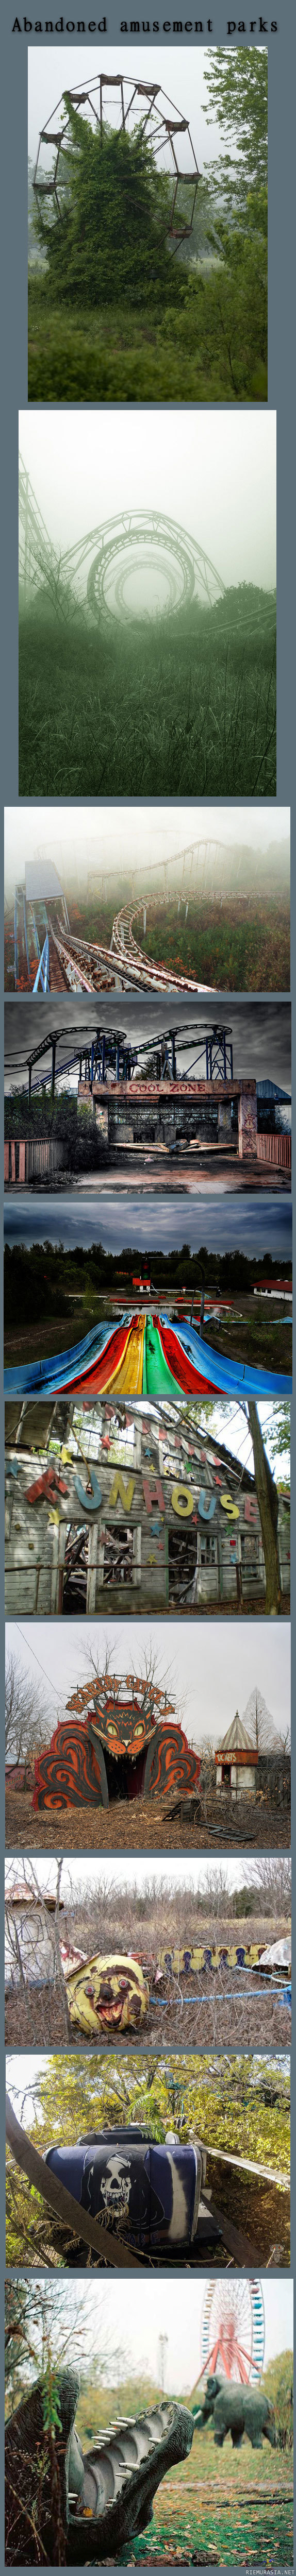 Abandoned amusement parks